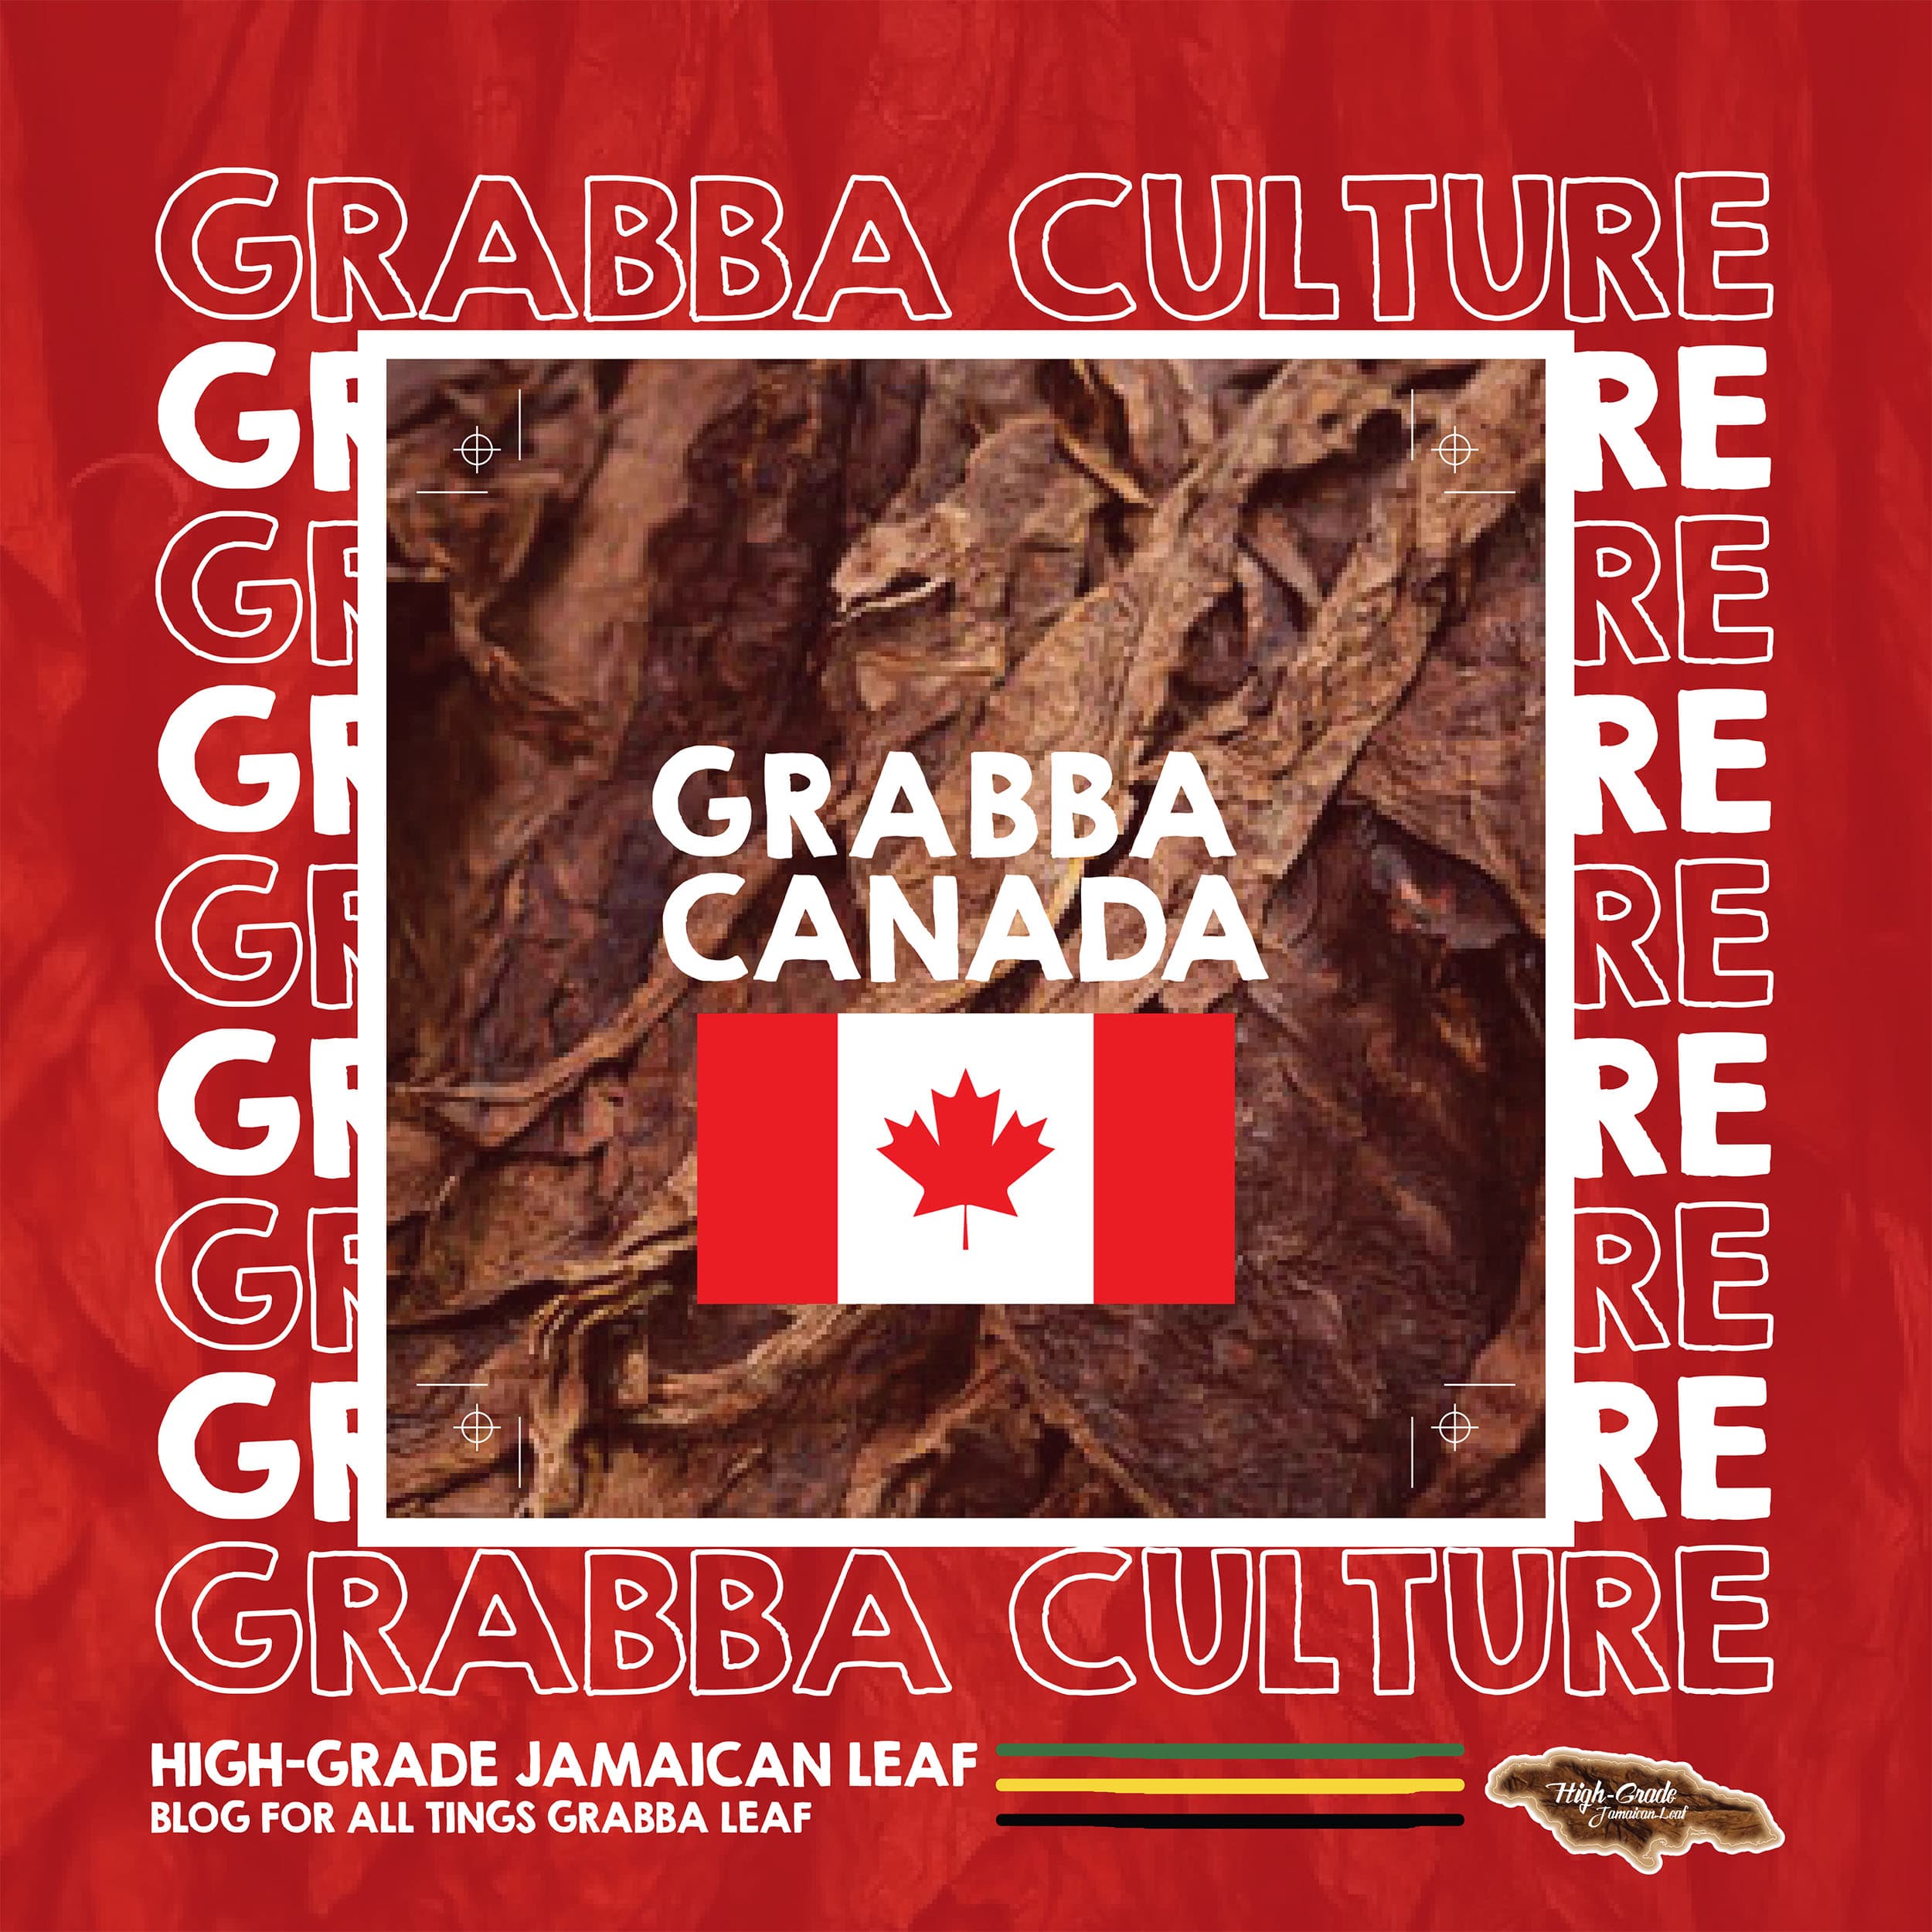 Grabba – Canada